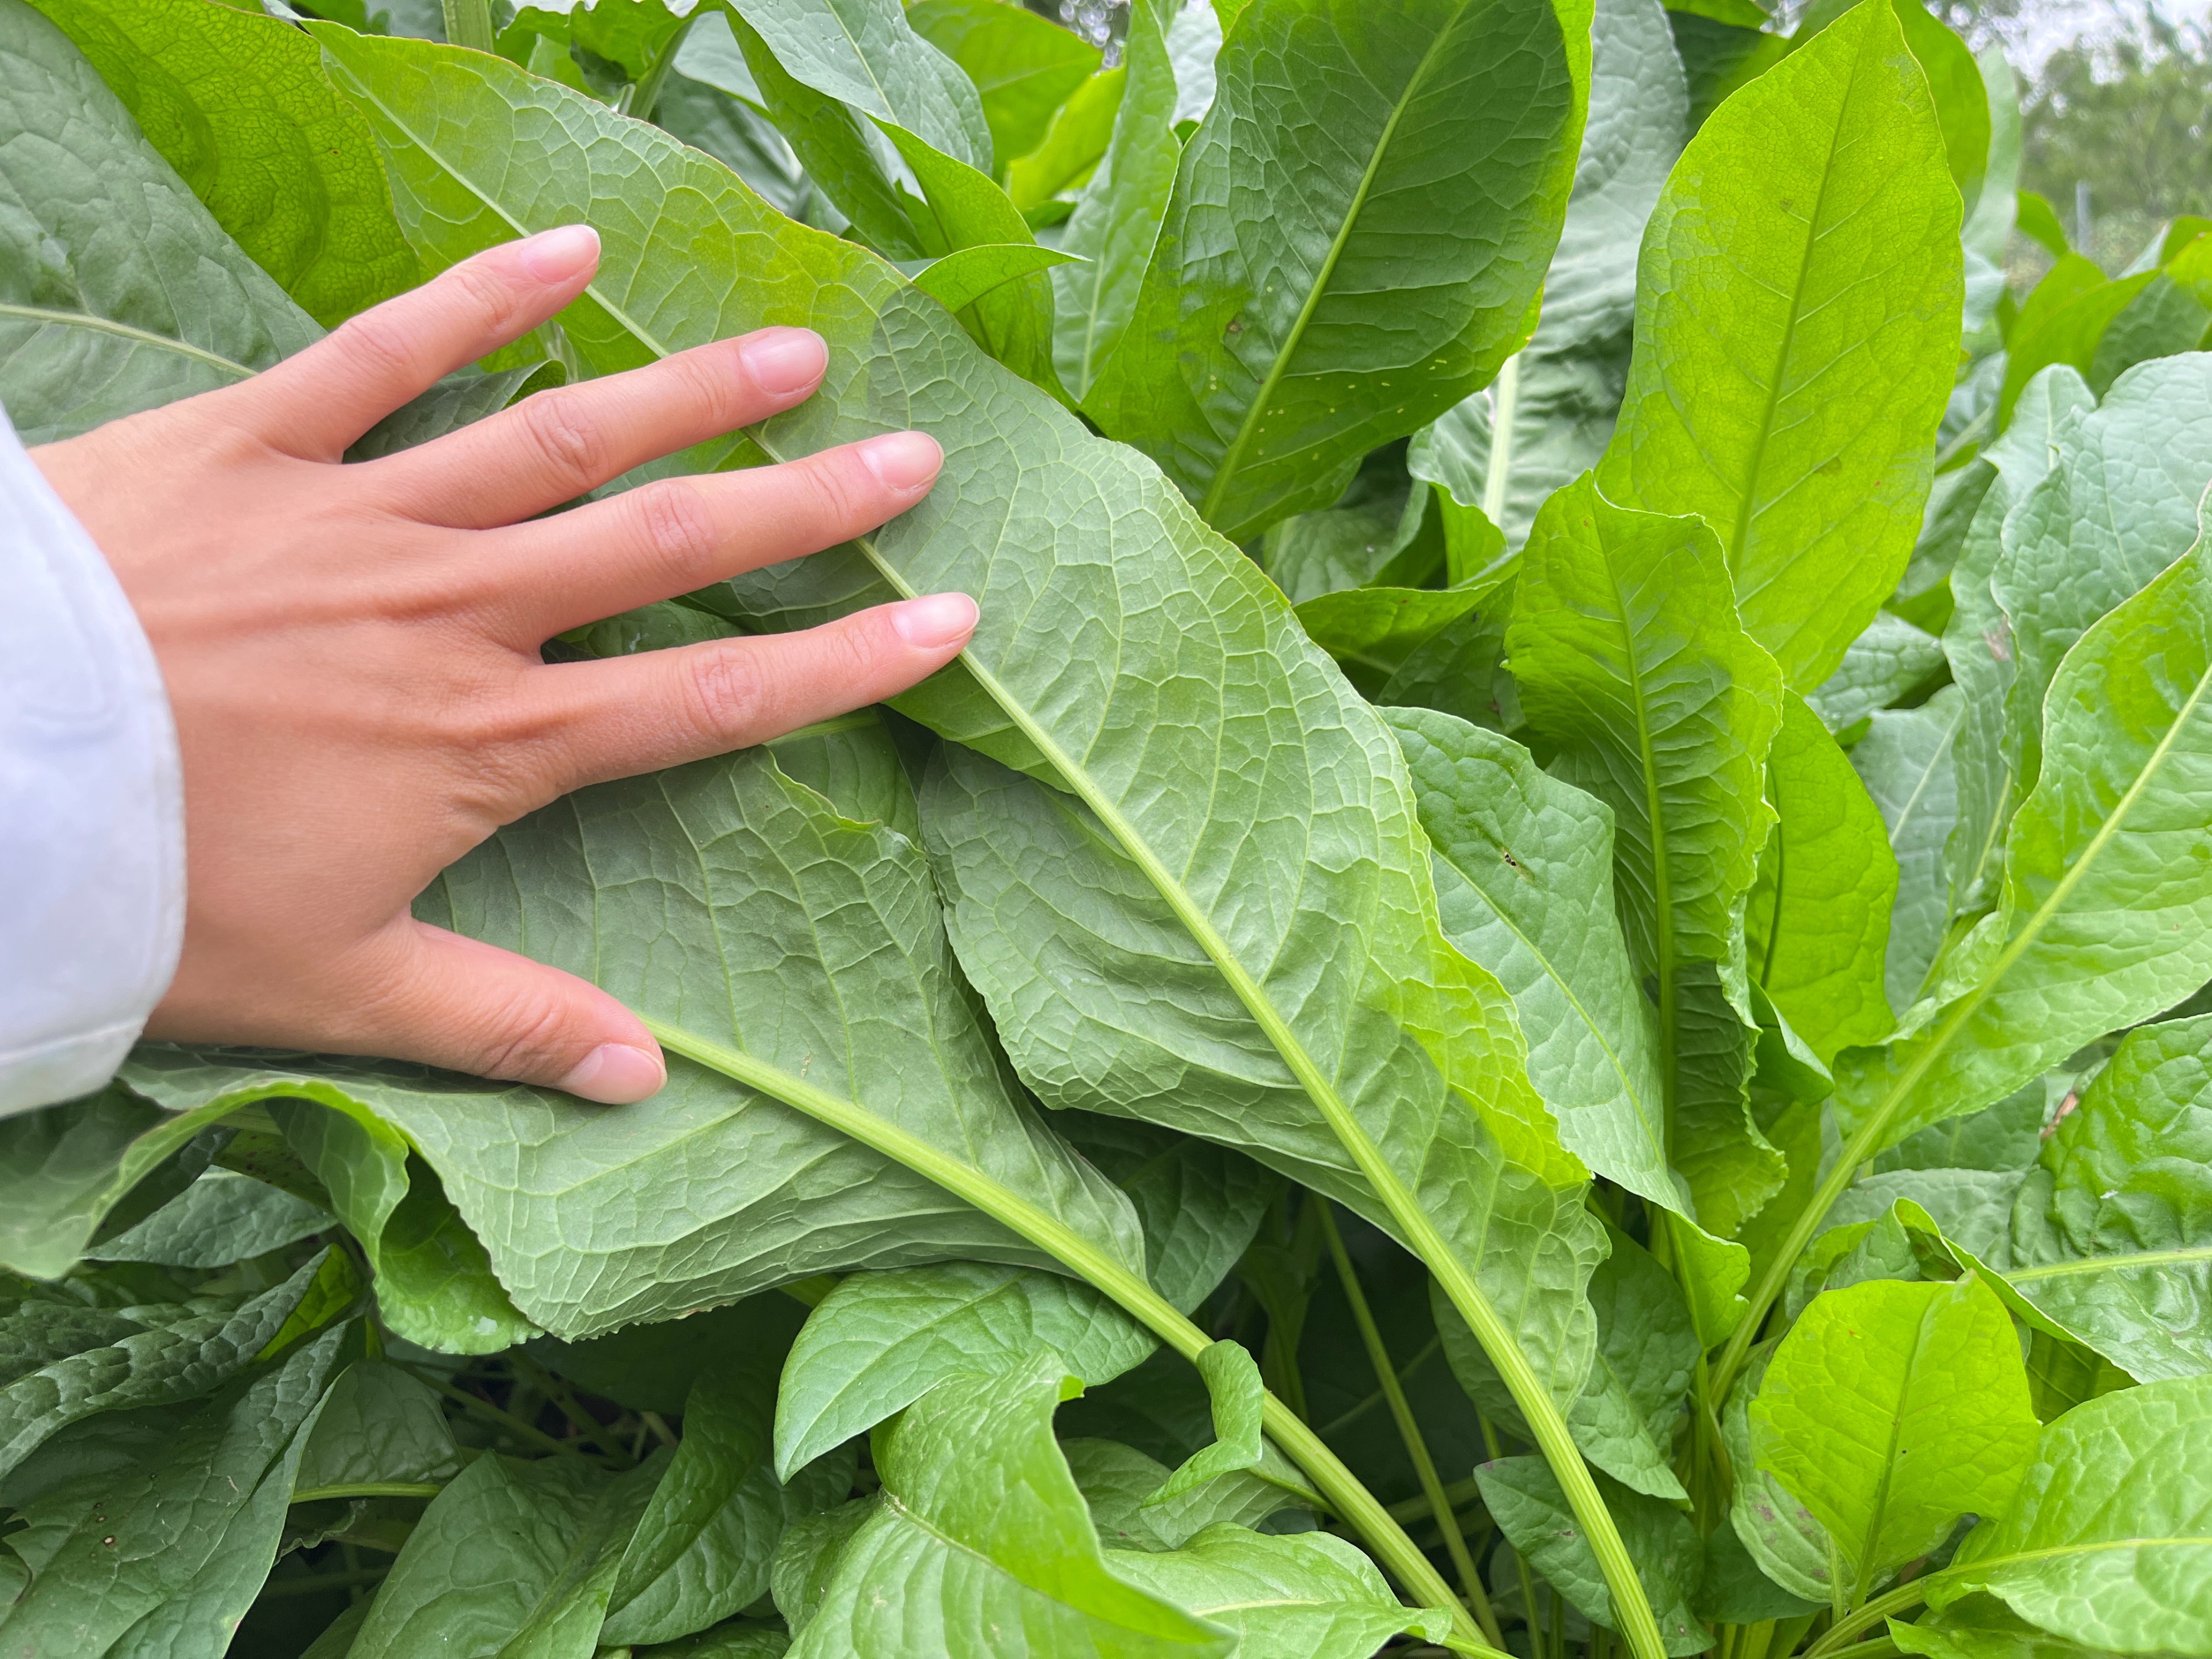 食叶草母本鲁梅克斯,蛋白质含量38%亩产达20吨,为何备受争议?